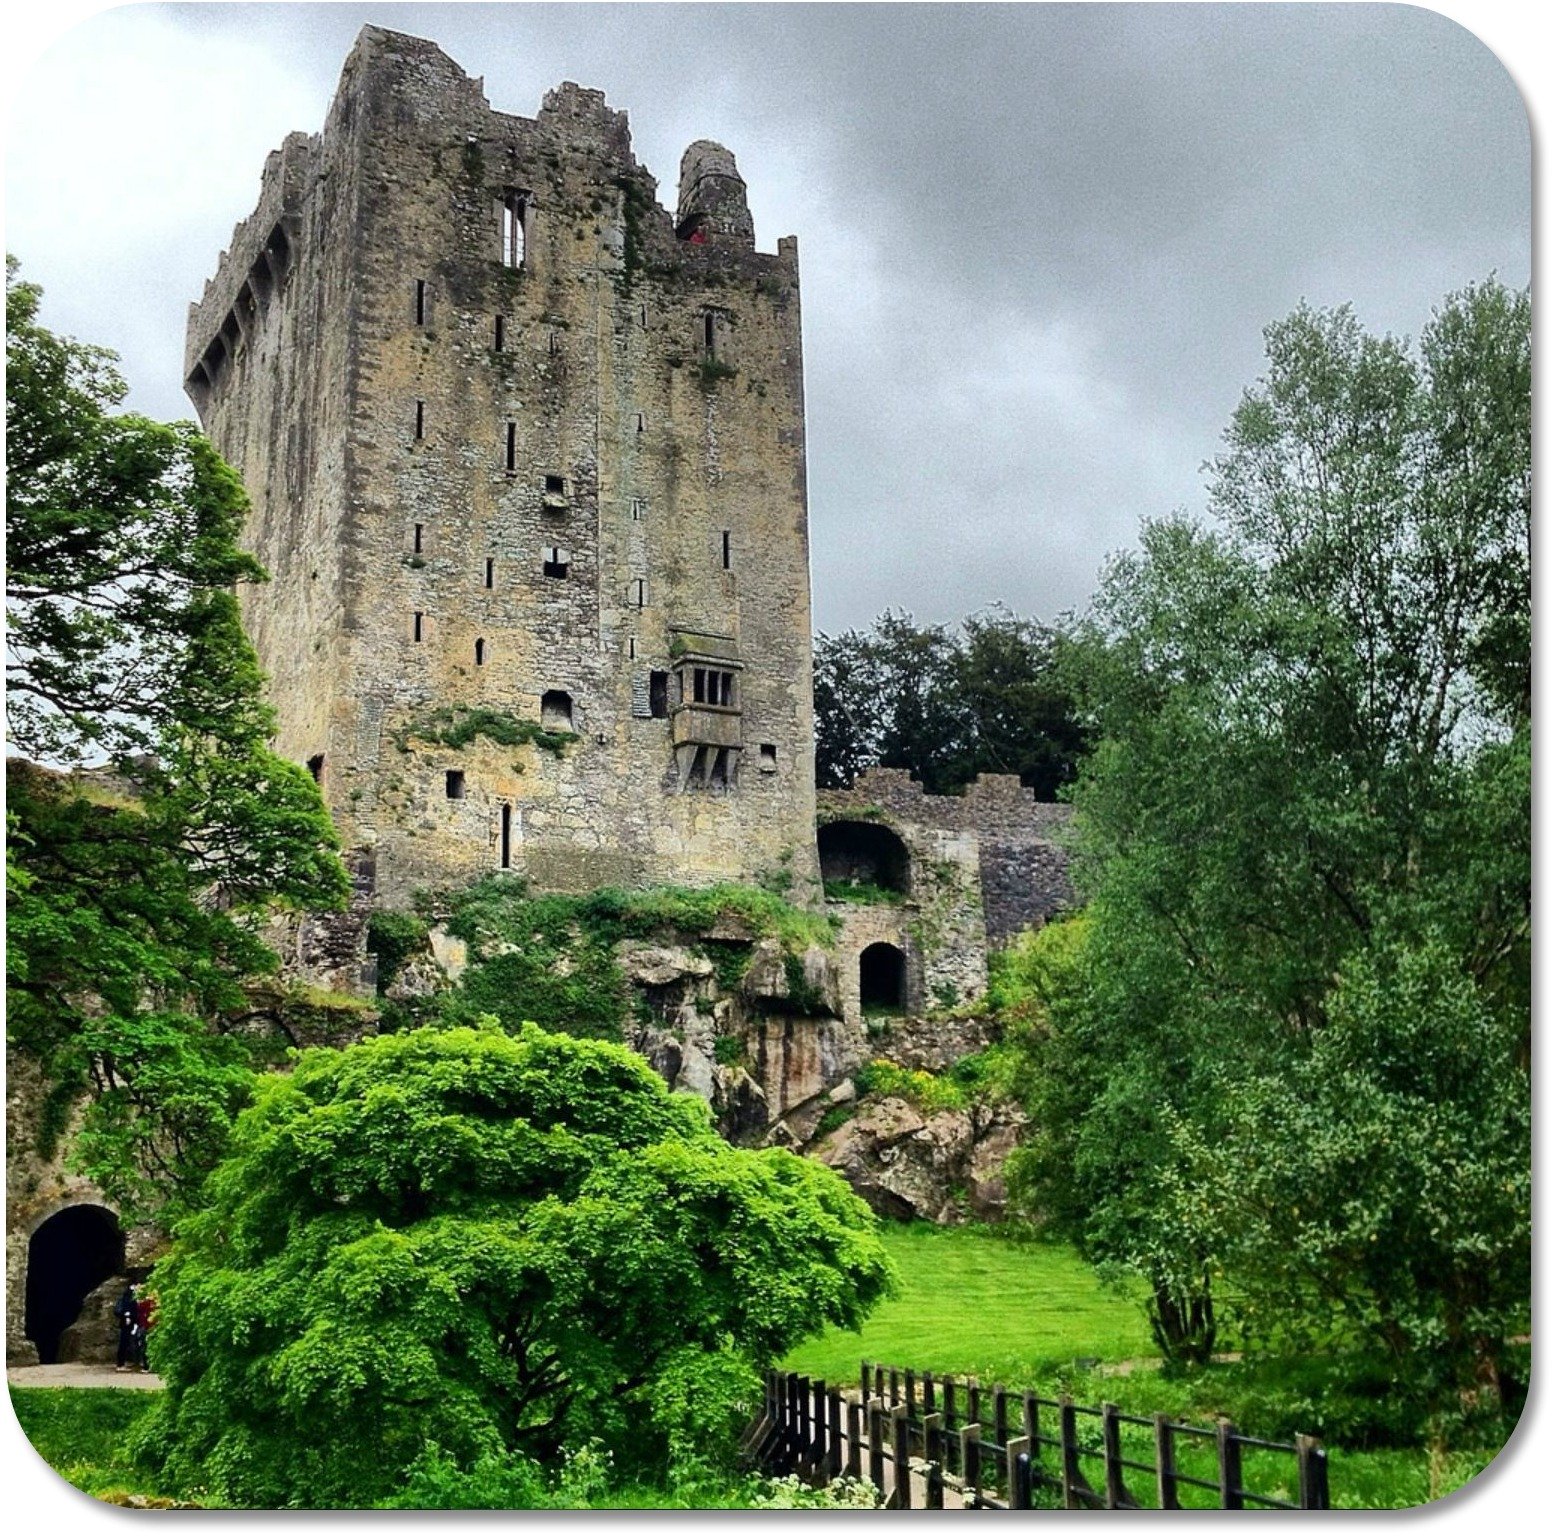 Irish Expressions - facade of Blarney Castle!